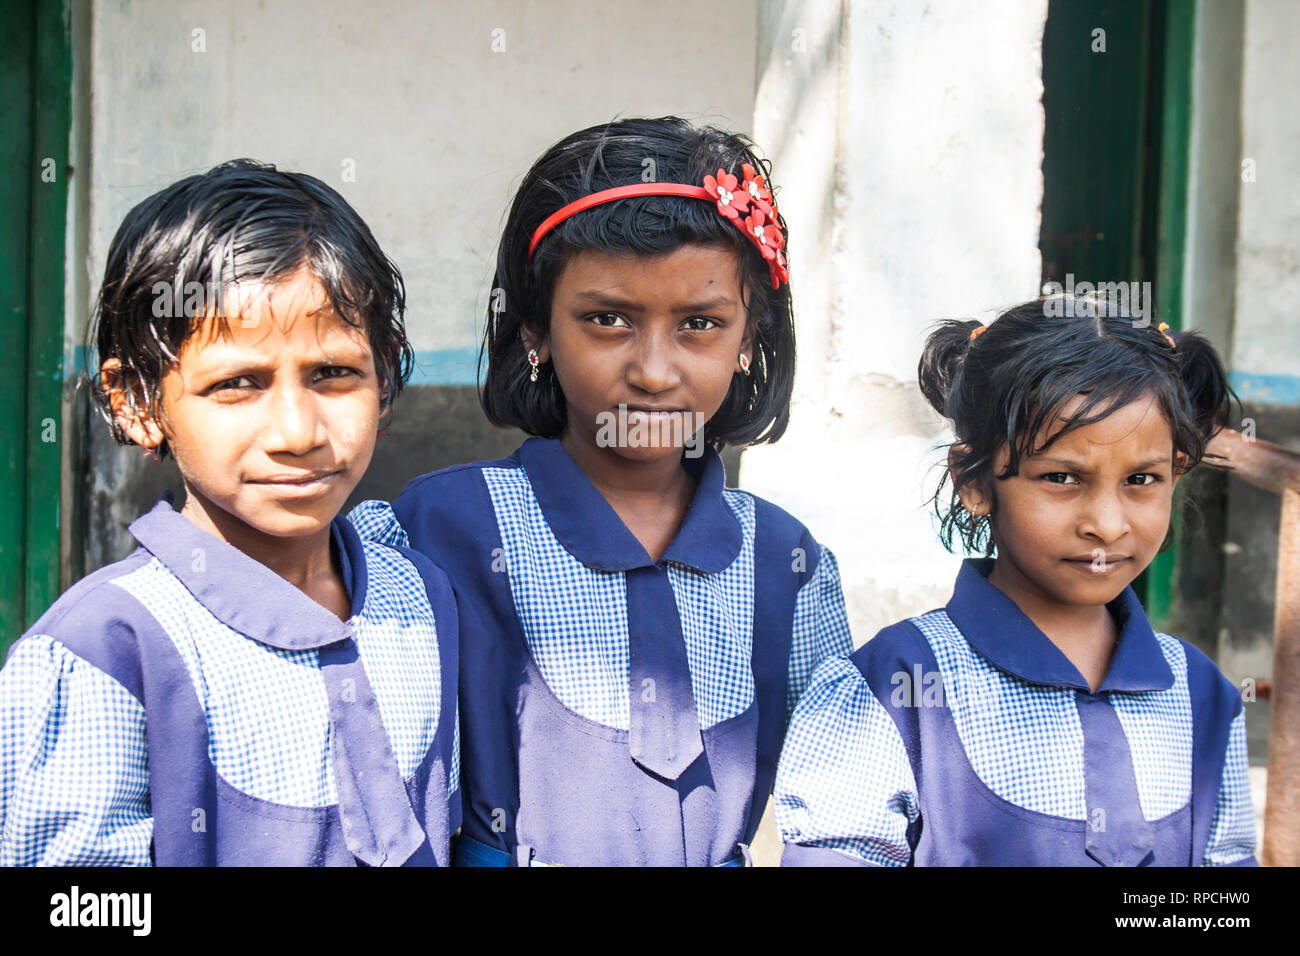 3 Schoolgirl Porn - Indian School Girls Stock Photos & Indian School Girls Stock ...